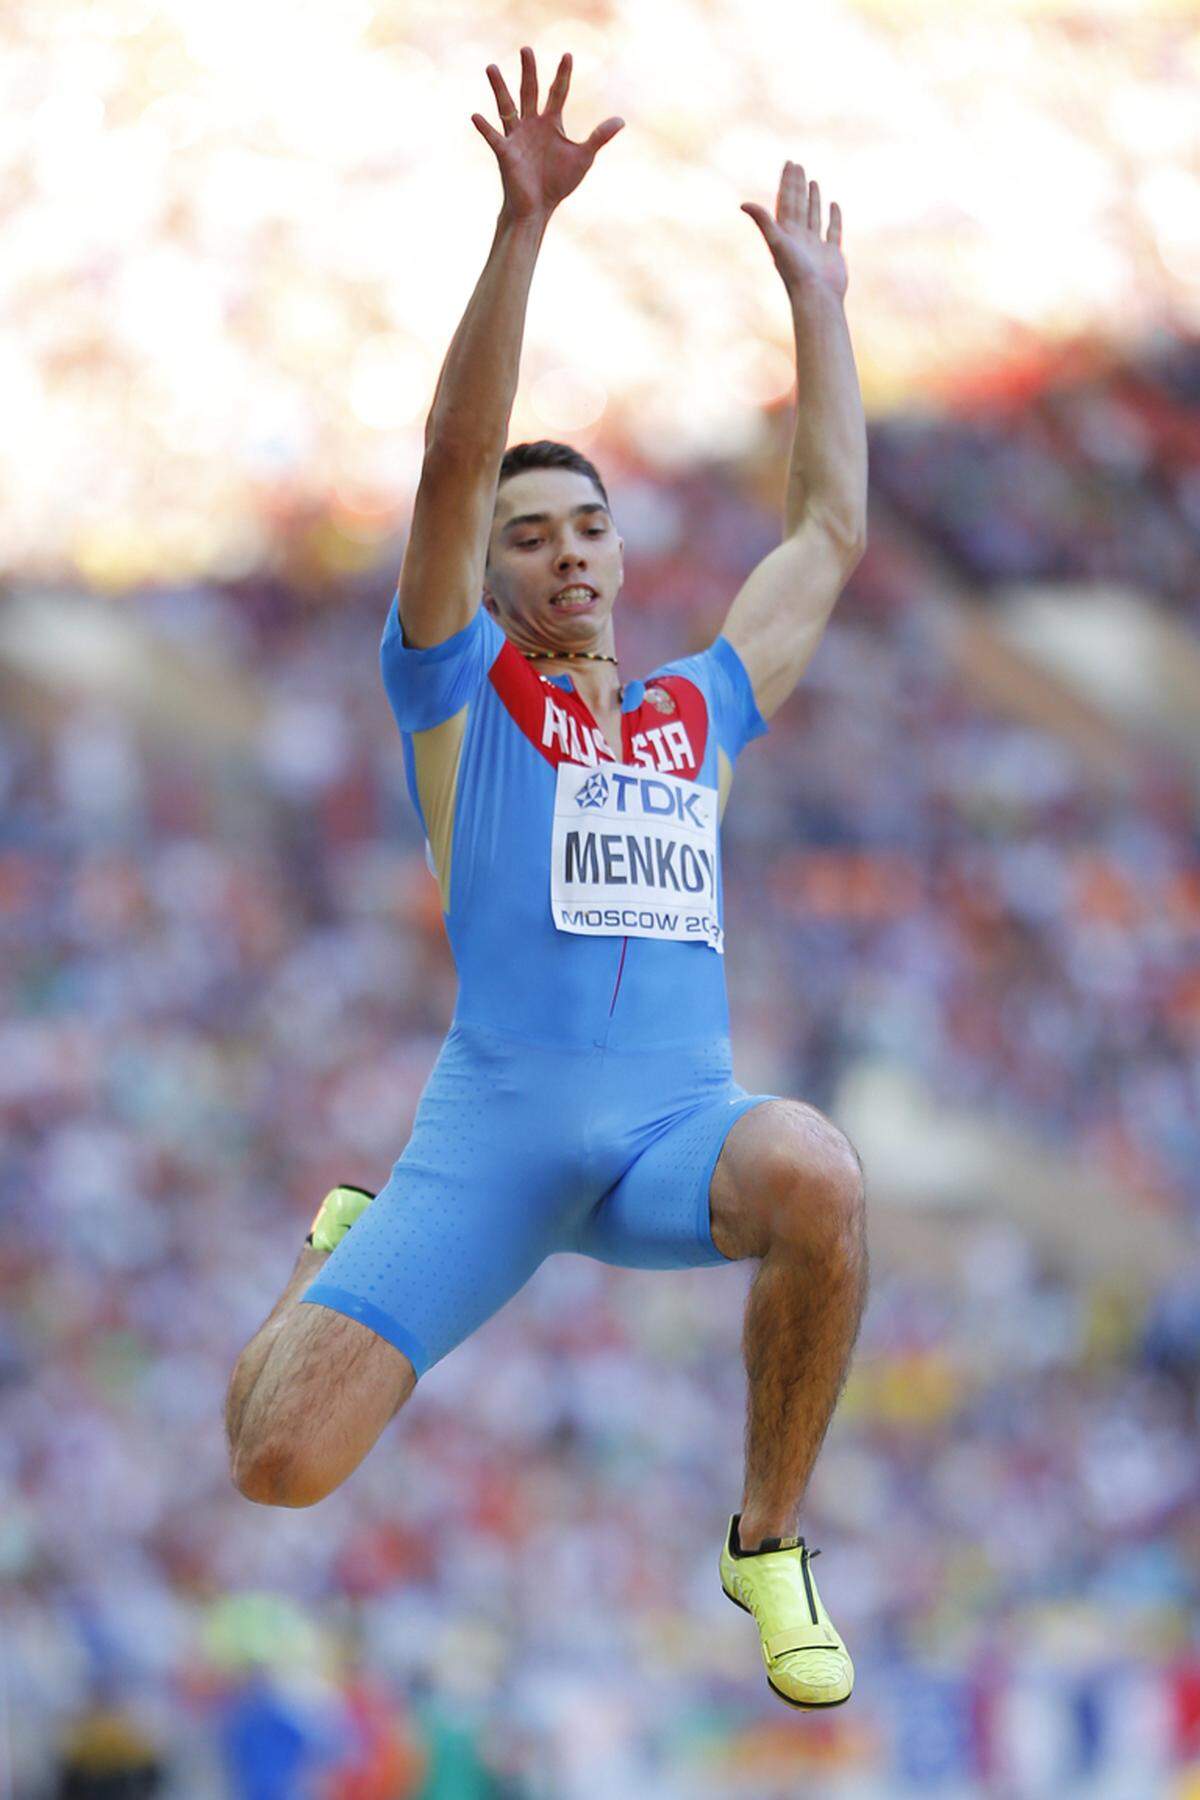 Der Russe Aleksandr Menkov, der mit einen Satz auf 8,56 Meter überlegen zu Gold springt, ist der erste Weltsprungweltmeister, der aus Europa kommt. Dahinter überrascht in einem Zentimeterkrimi der Niederländer Ignisious Gaisah, der um zwei Zentimeter Silber vor dem Spanier Luis Rivera holt